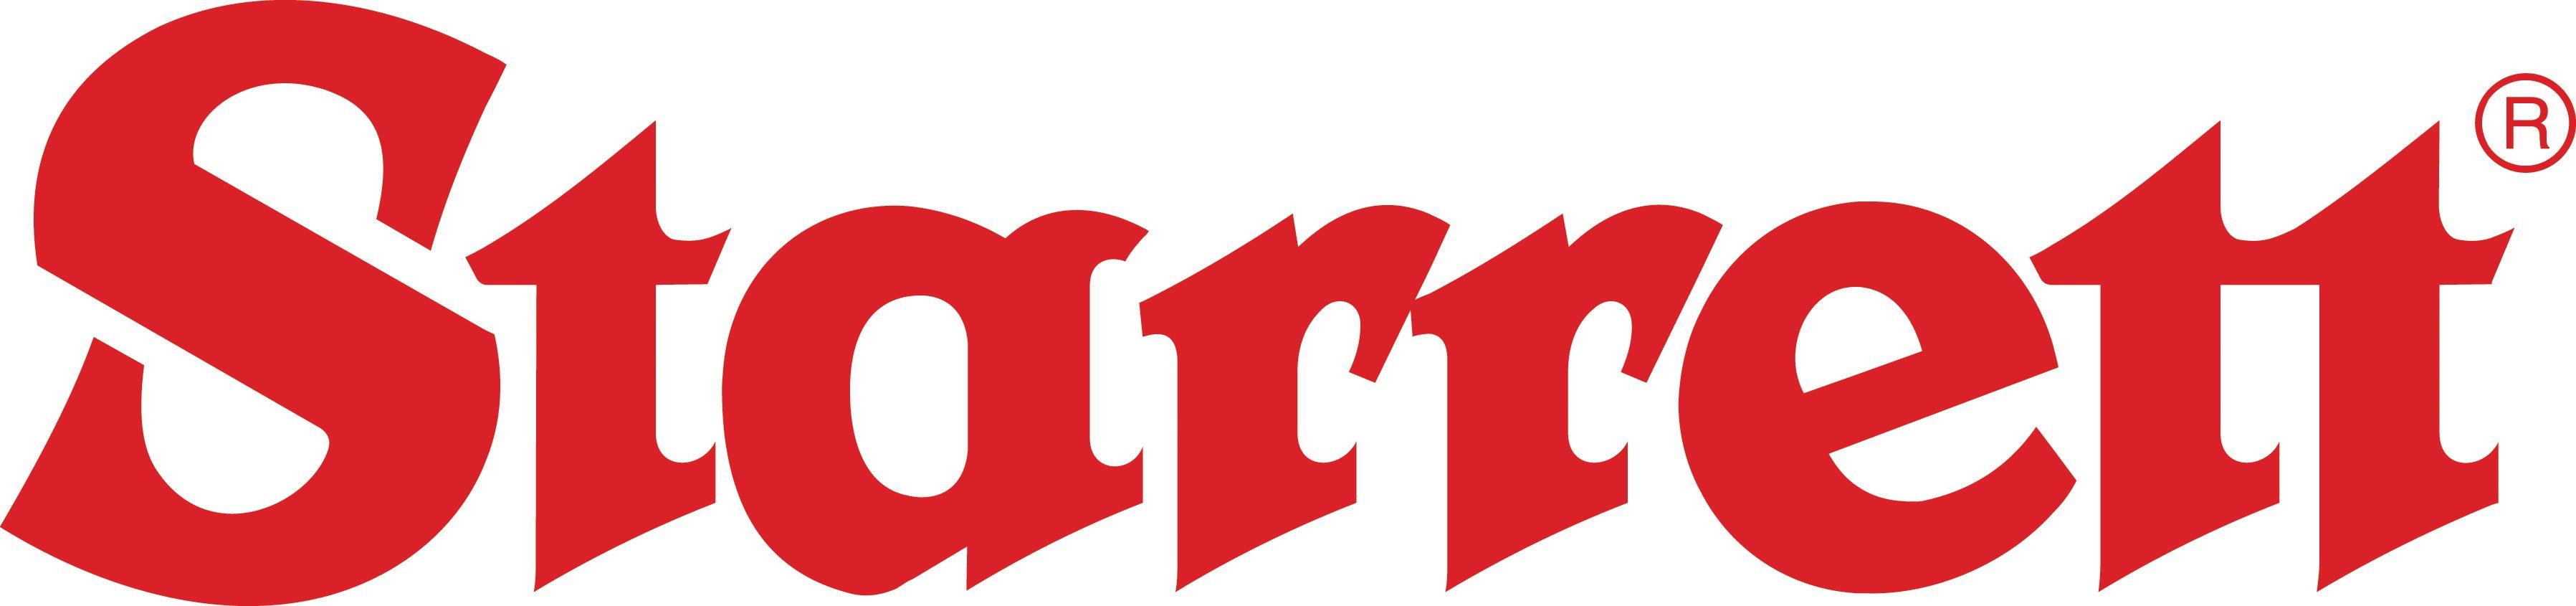 Starrett Logo - MSI